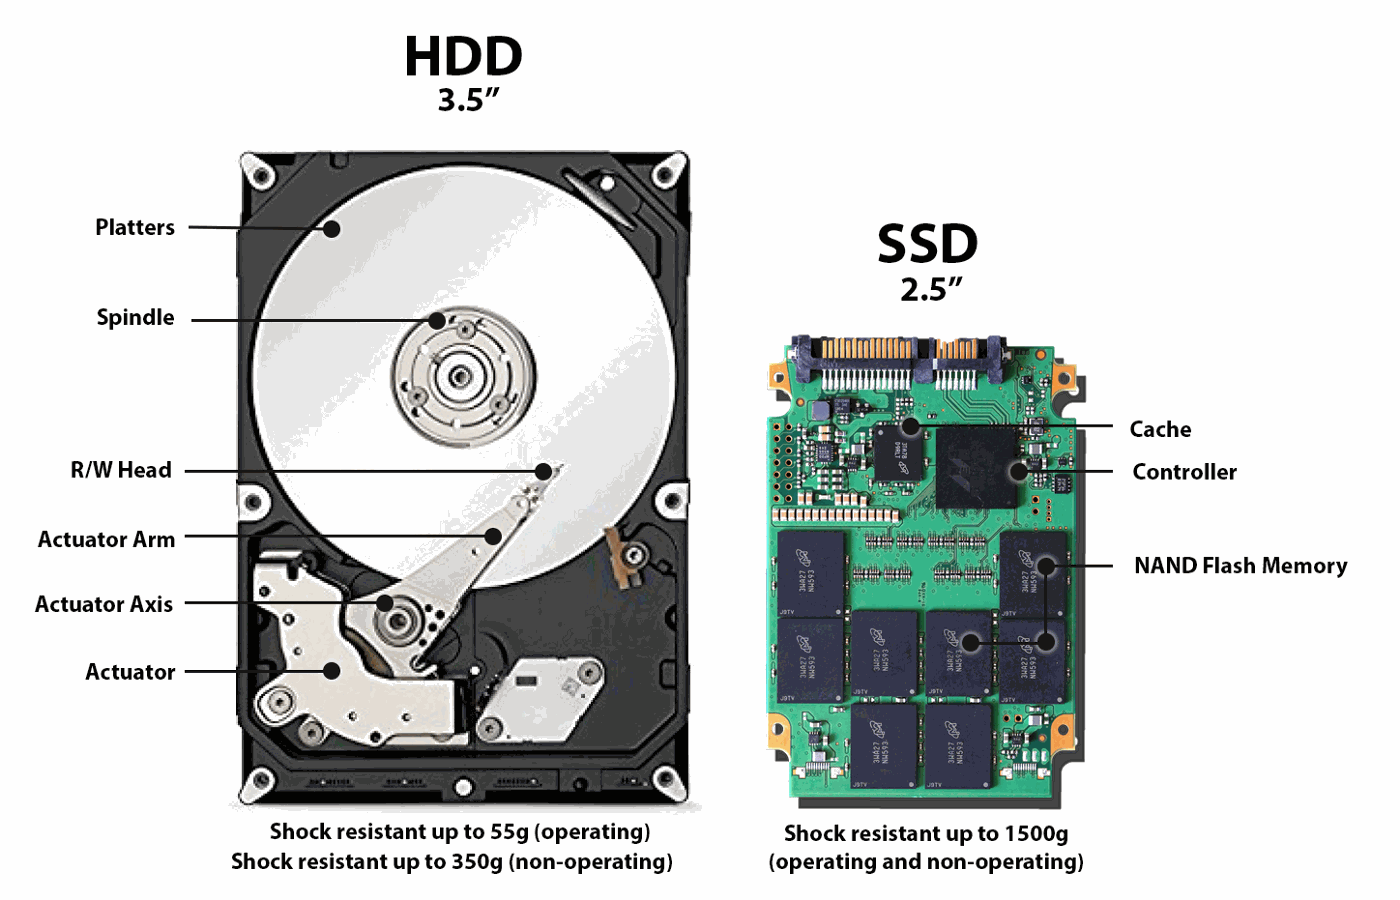 HDD x SSD